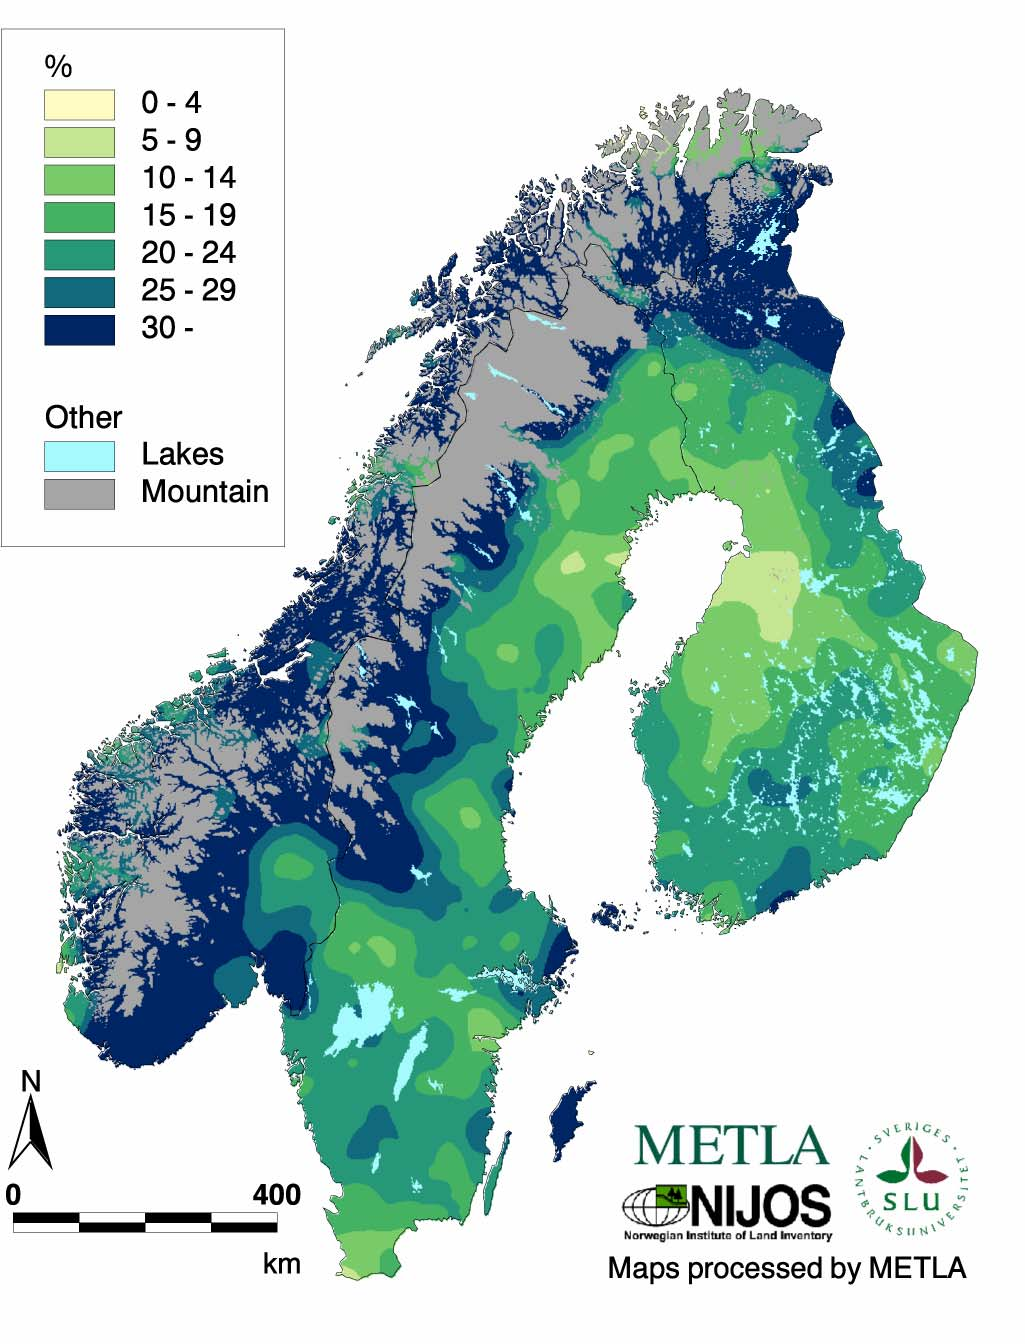 Hogstmoden skog, geografisk fordeling Figuren viser utbredelse for arealandeler (i % av produktivt skogareal) for hogstmoden skog i Fennoskandia.